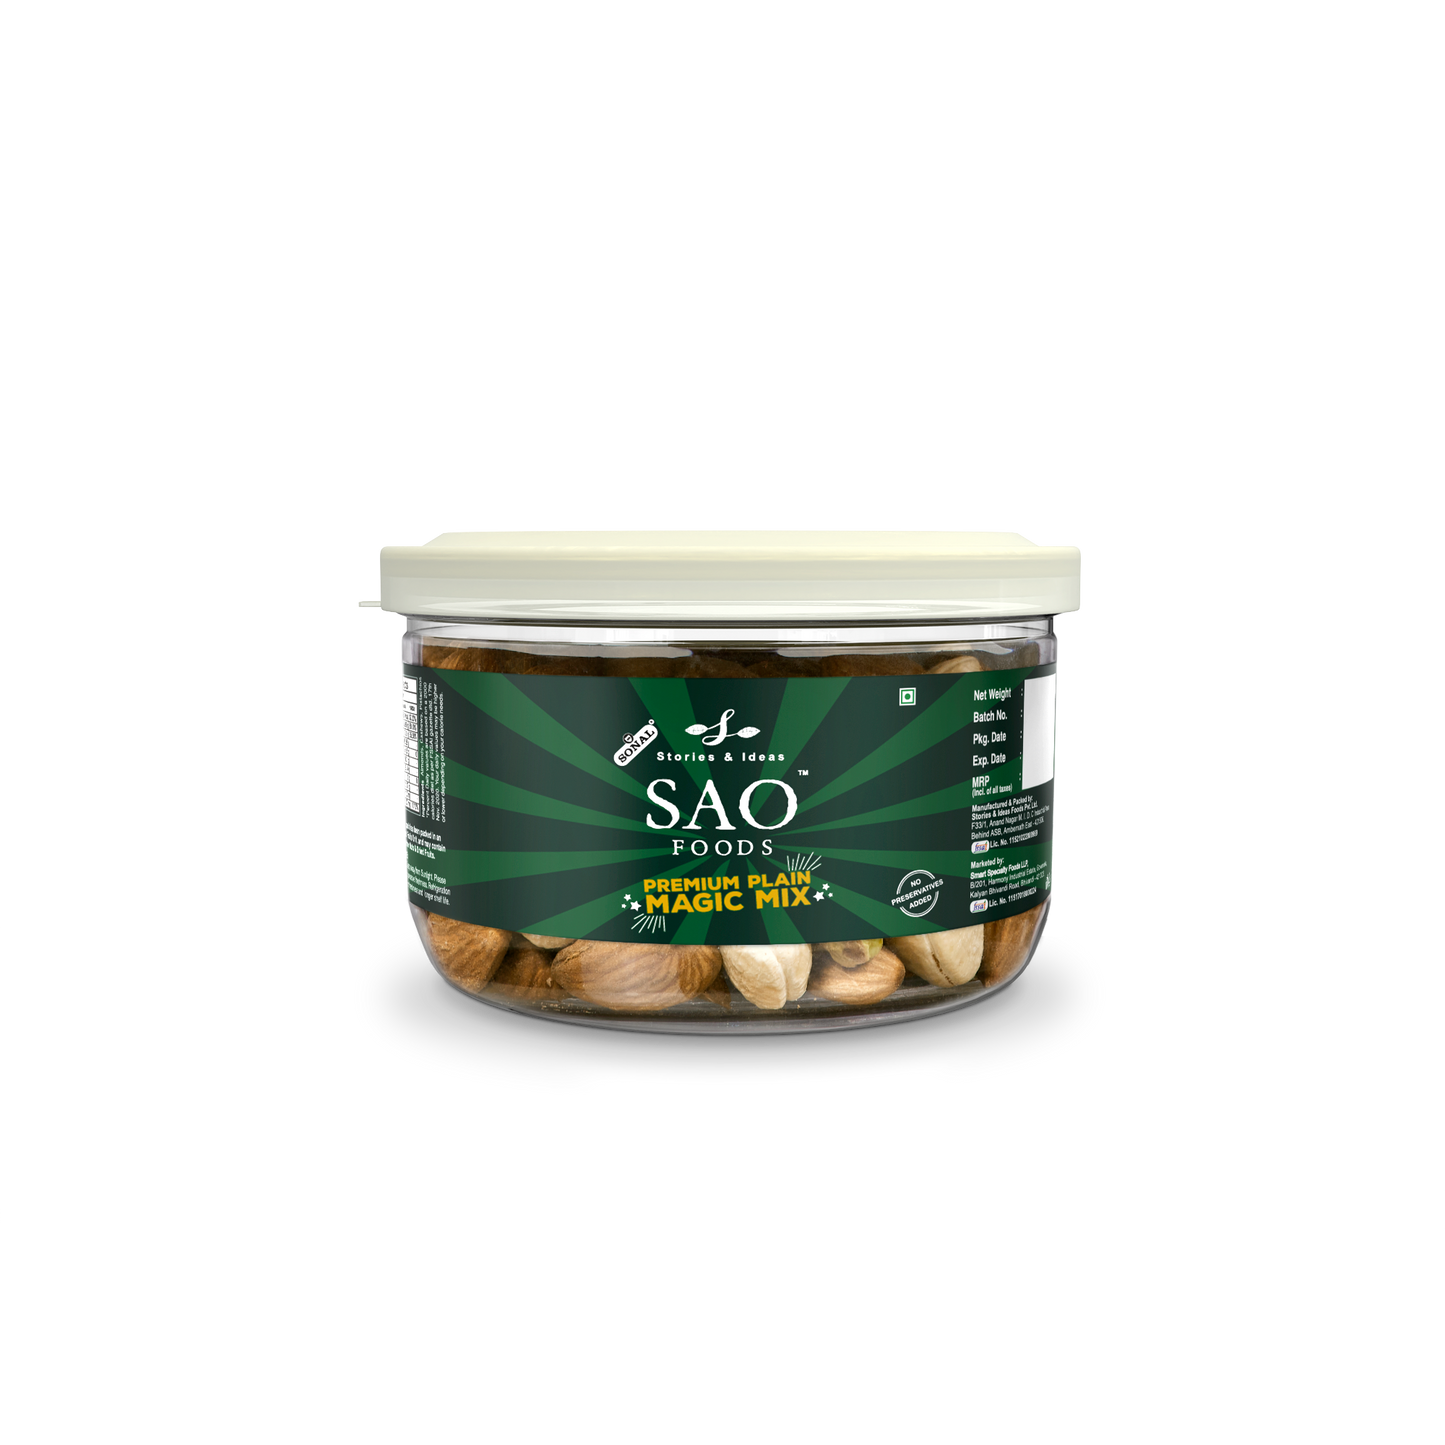 SAO Foods Premium Plain Magic Mix 100 gm | Tin Cap PET Jar